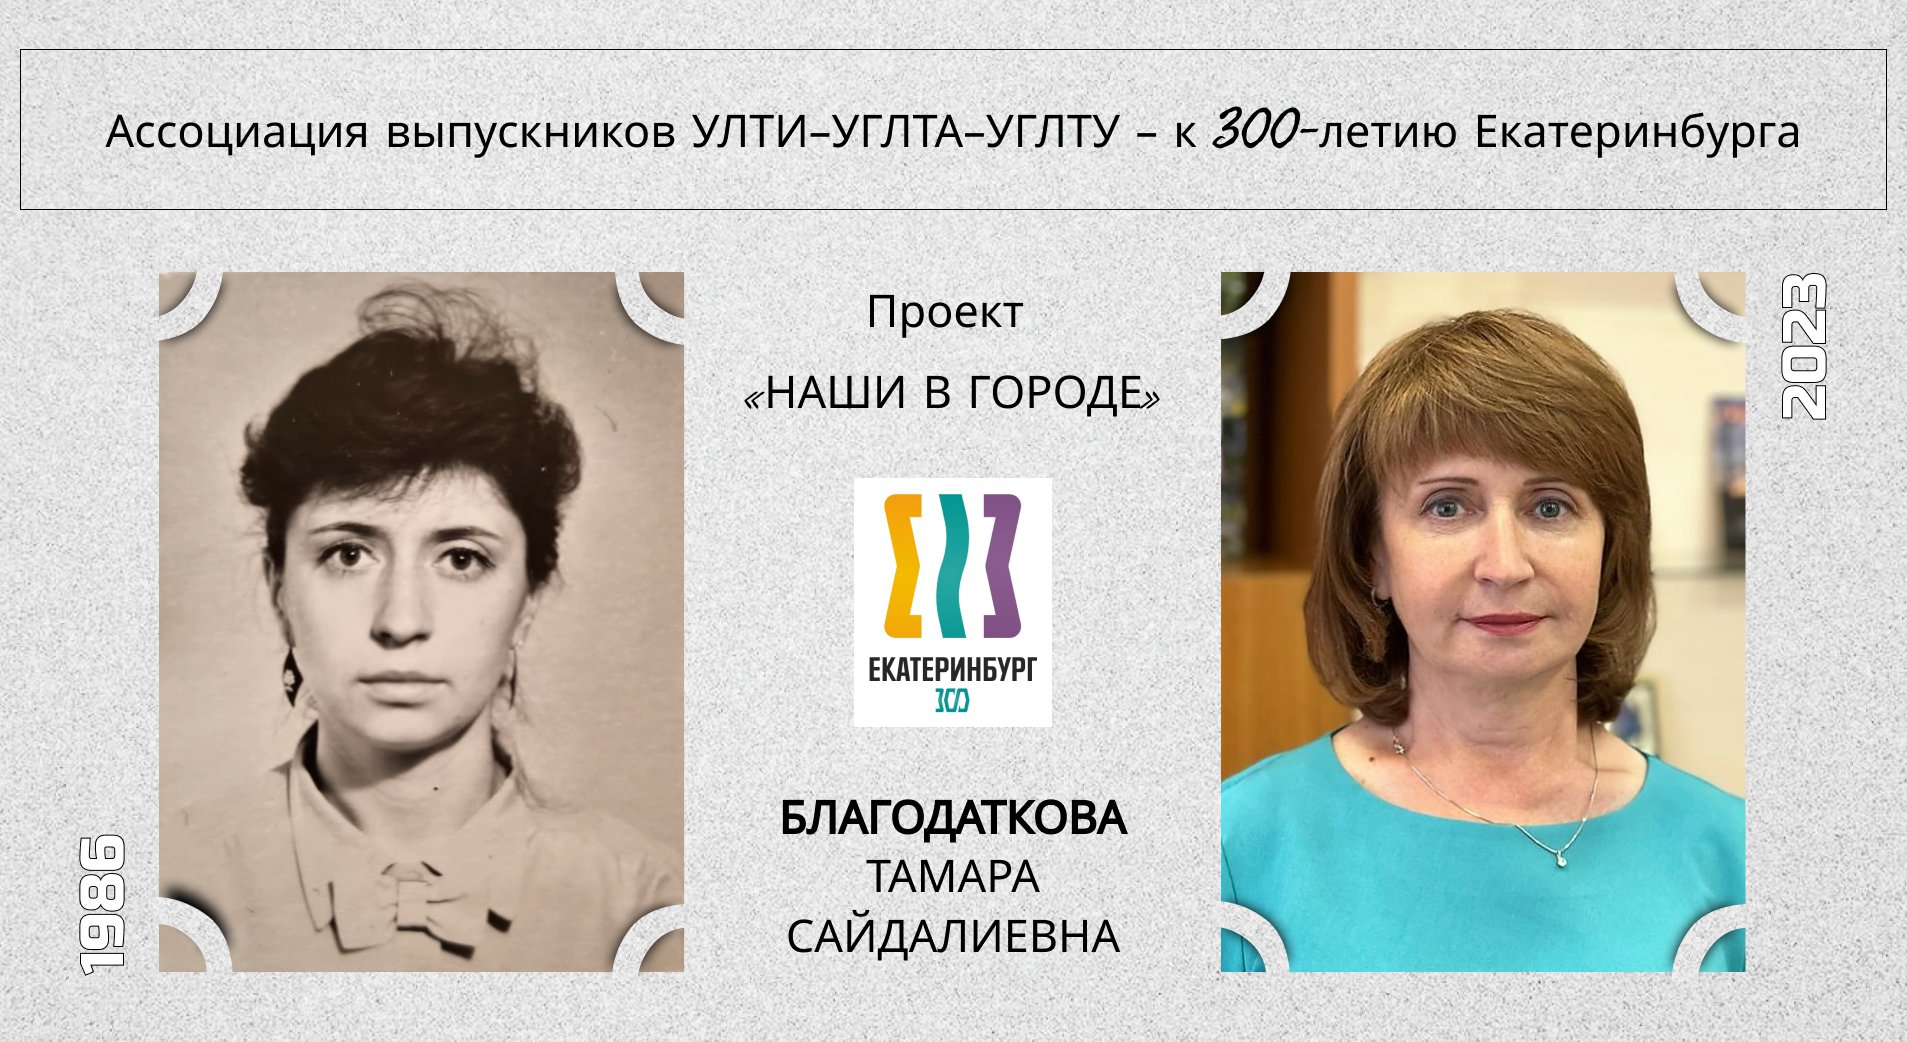 Благодаткова Тамара Сайдалиевна, выпускница лесохозяйственного факультета 1986 года.